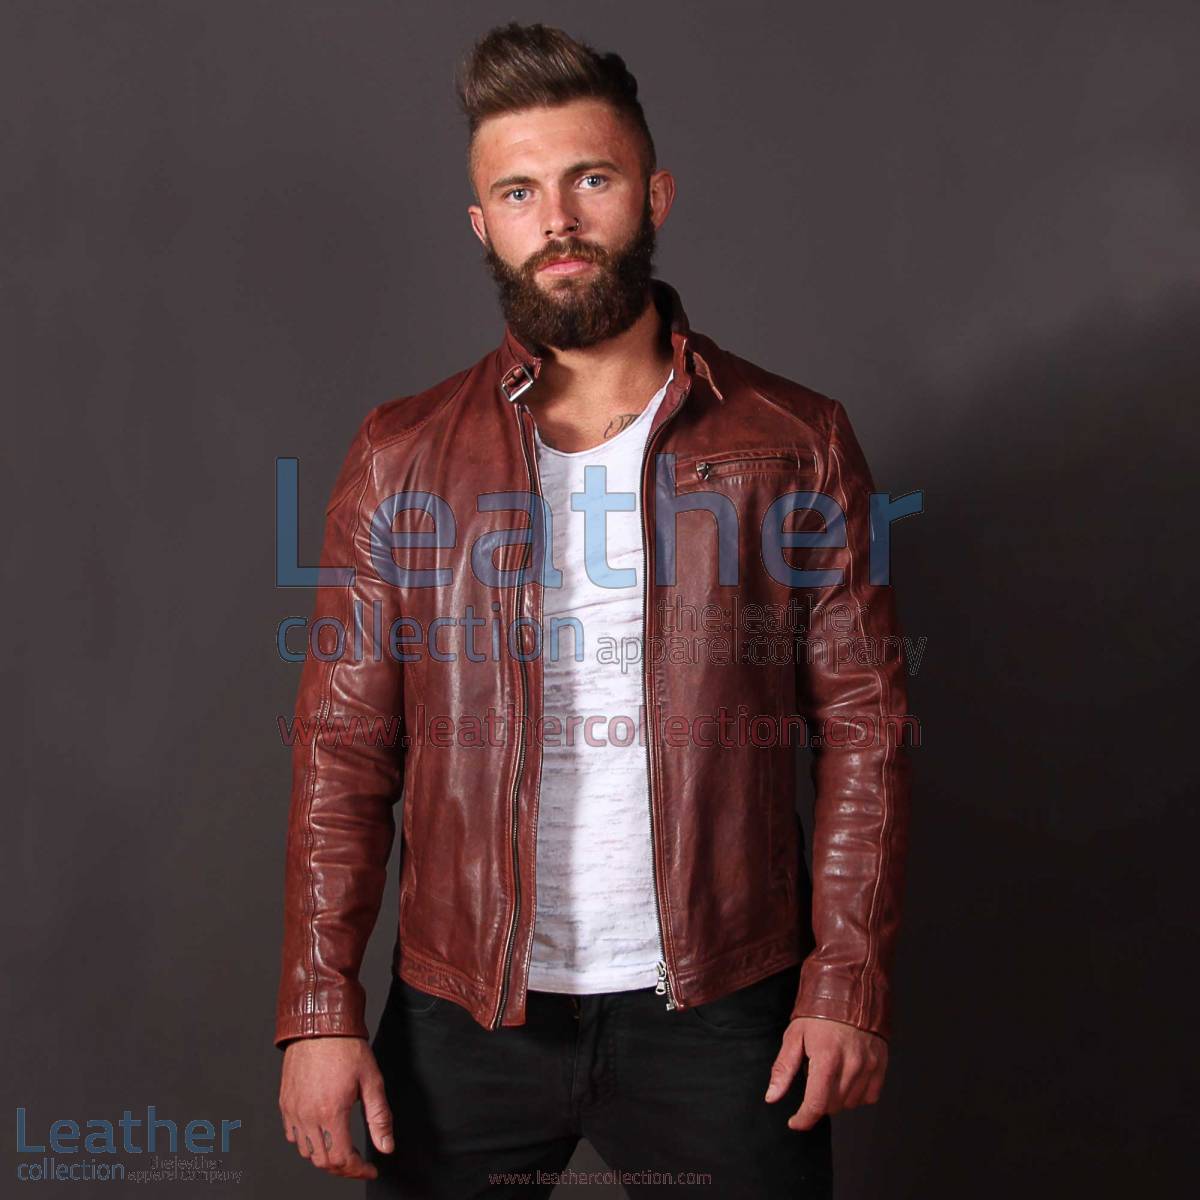 Jazz Leather Jacket for Men | leather jacket for men,jazz jacket